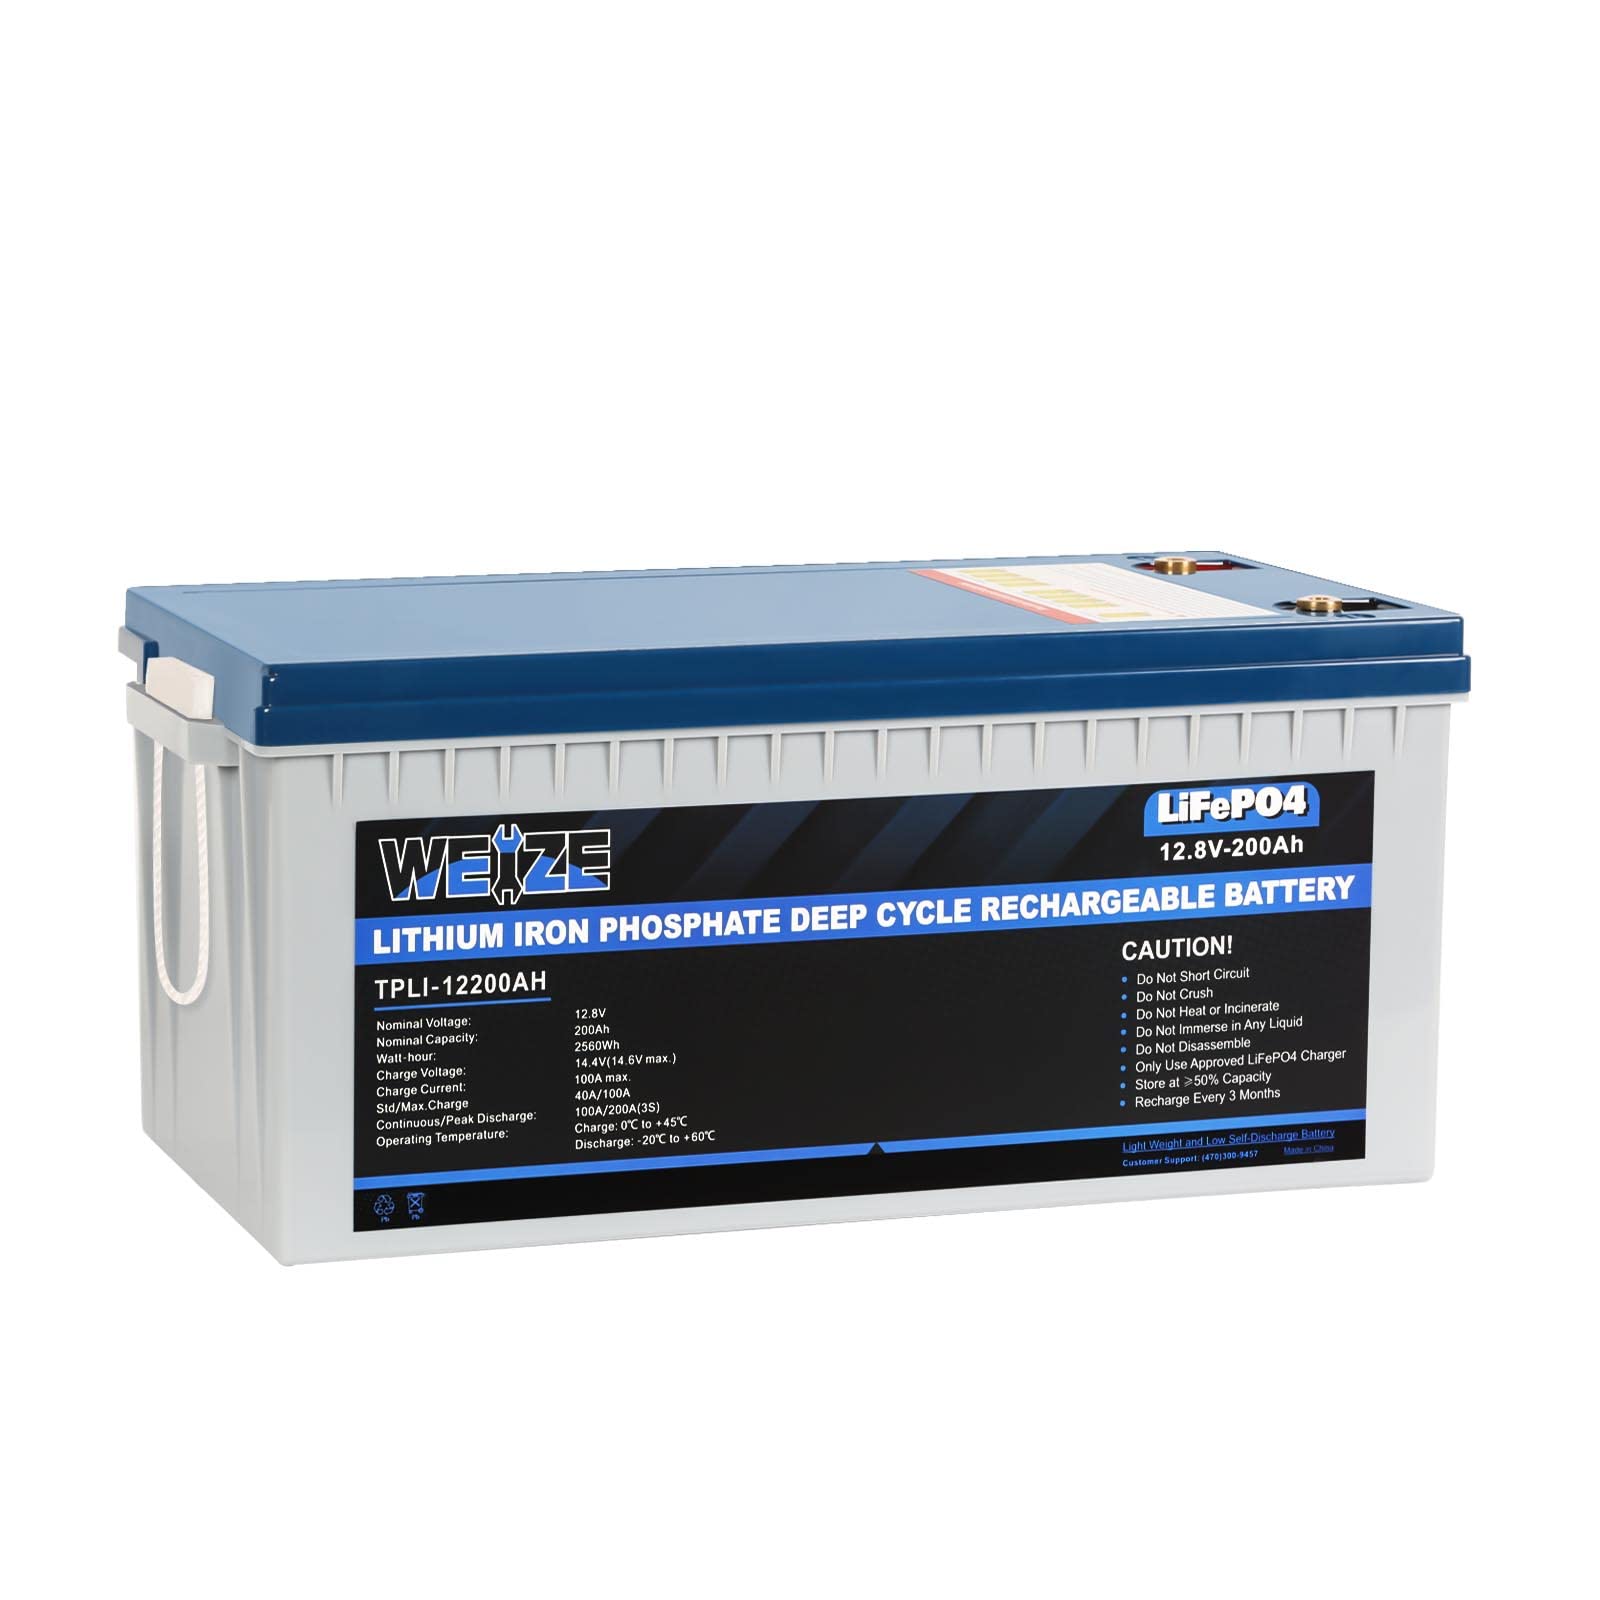 BATTERIE MONOBLOC LIFEPo4 WATERPROOF 12,8V 200Ah 2560WH - Batterie Multi  Services